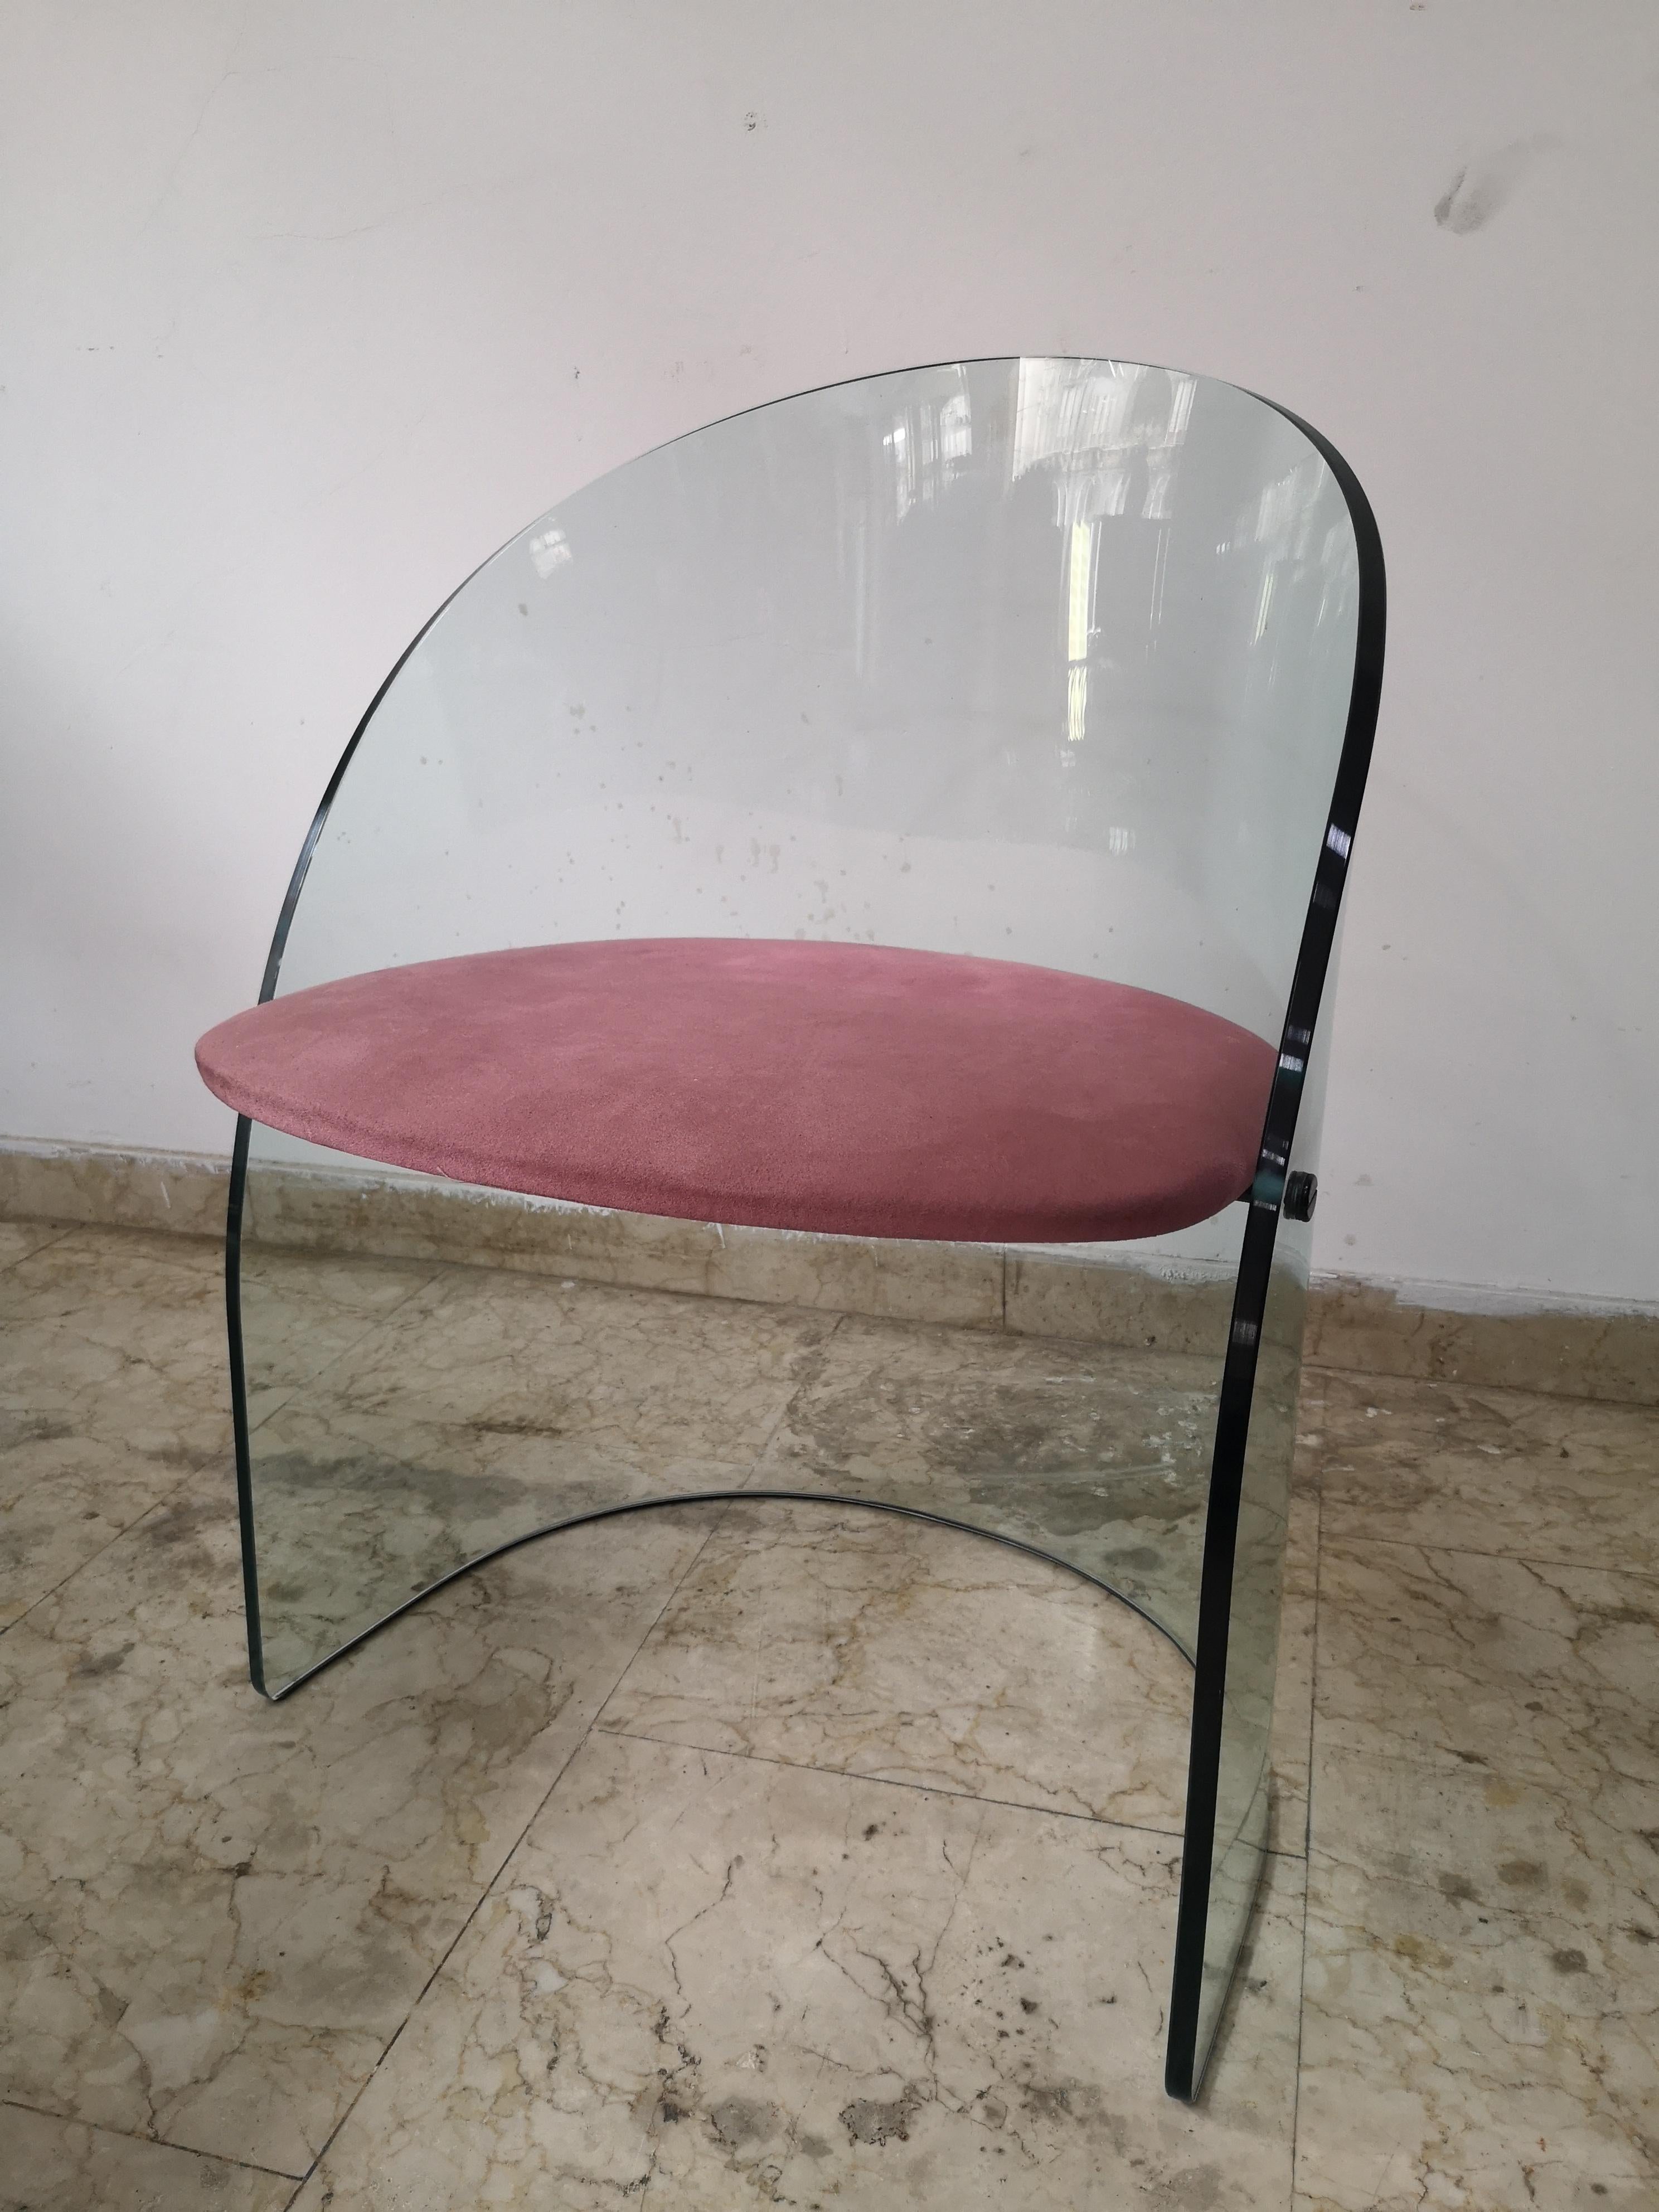 Sedia in vetro massiccio prodotta da FIAM, Italia negli anni '70. Sie wurde im Stil der von Louis Dierra für den Glass Center Pavillon auf der Weltausstellung in New York im Jahr 1939 entworfenen Medien entworfen.